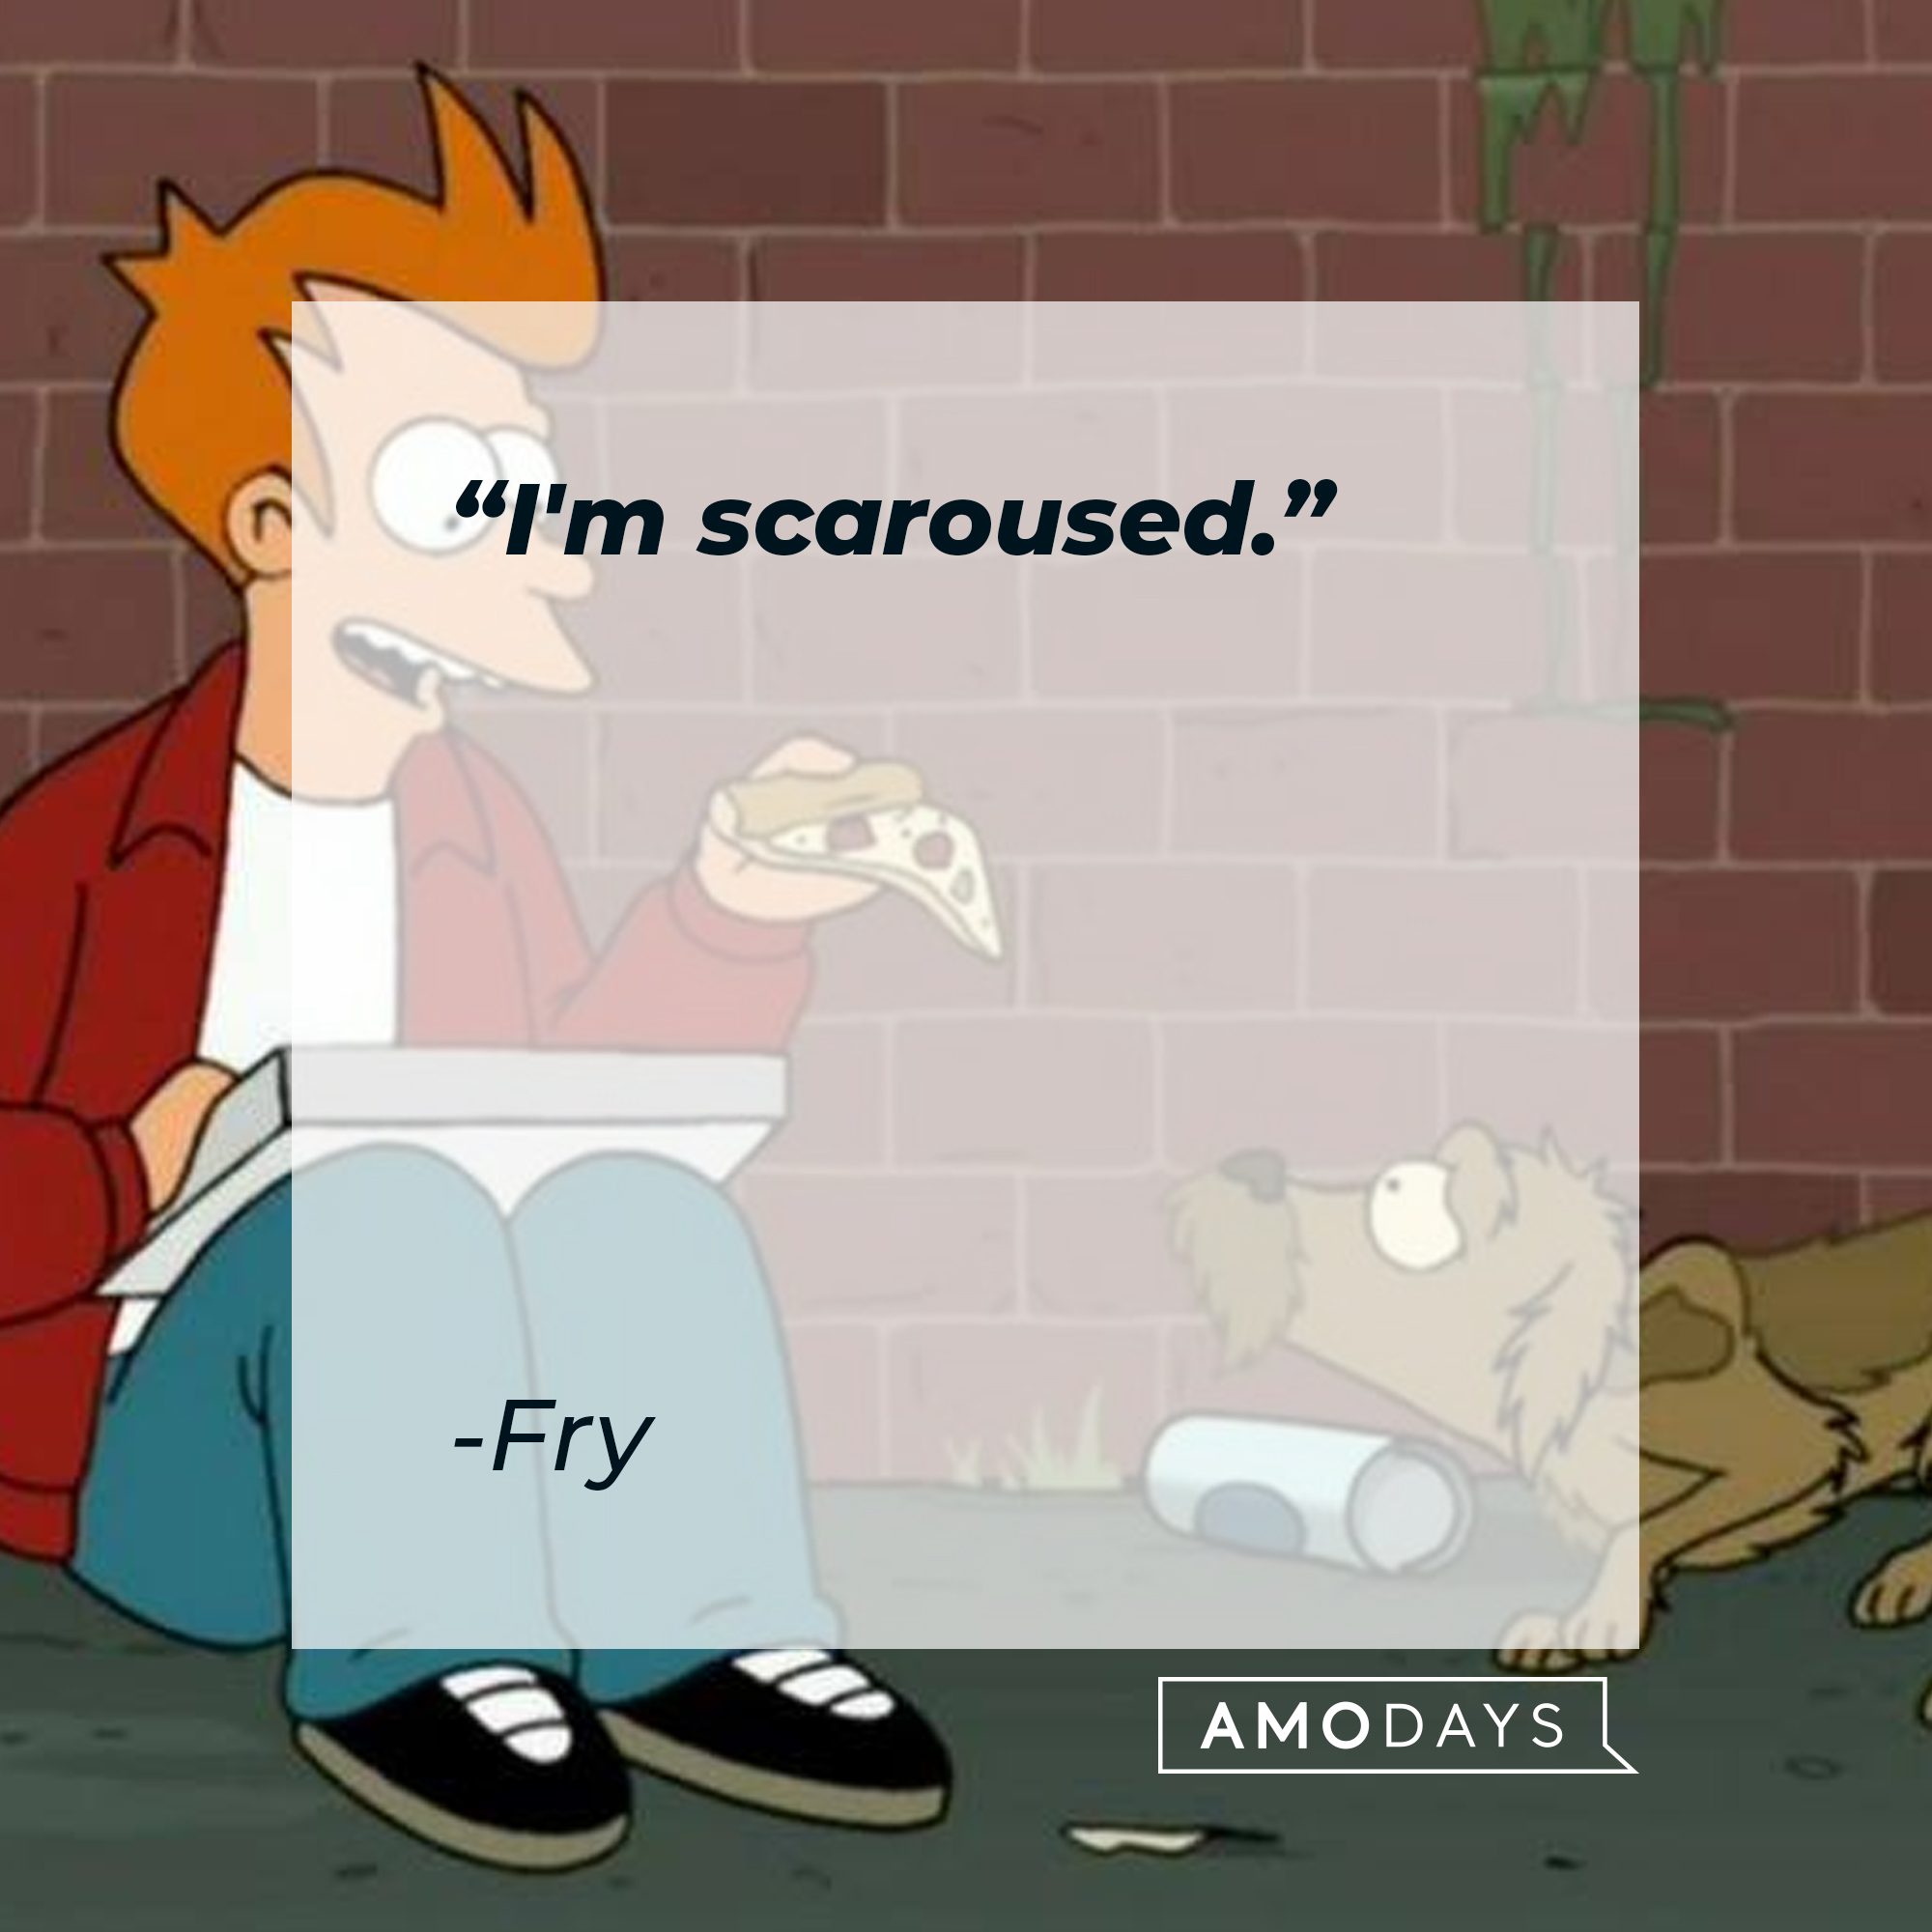 Fry Futurama's quote: "I'm scaroused." | Source: Facebook.com/Futurama